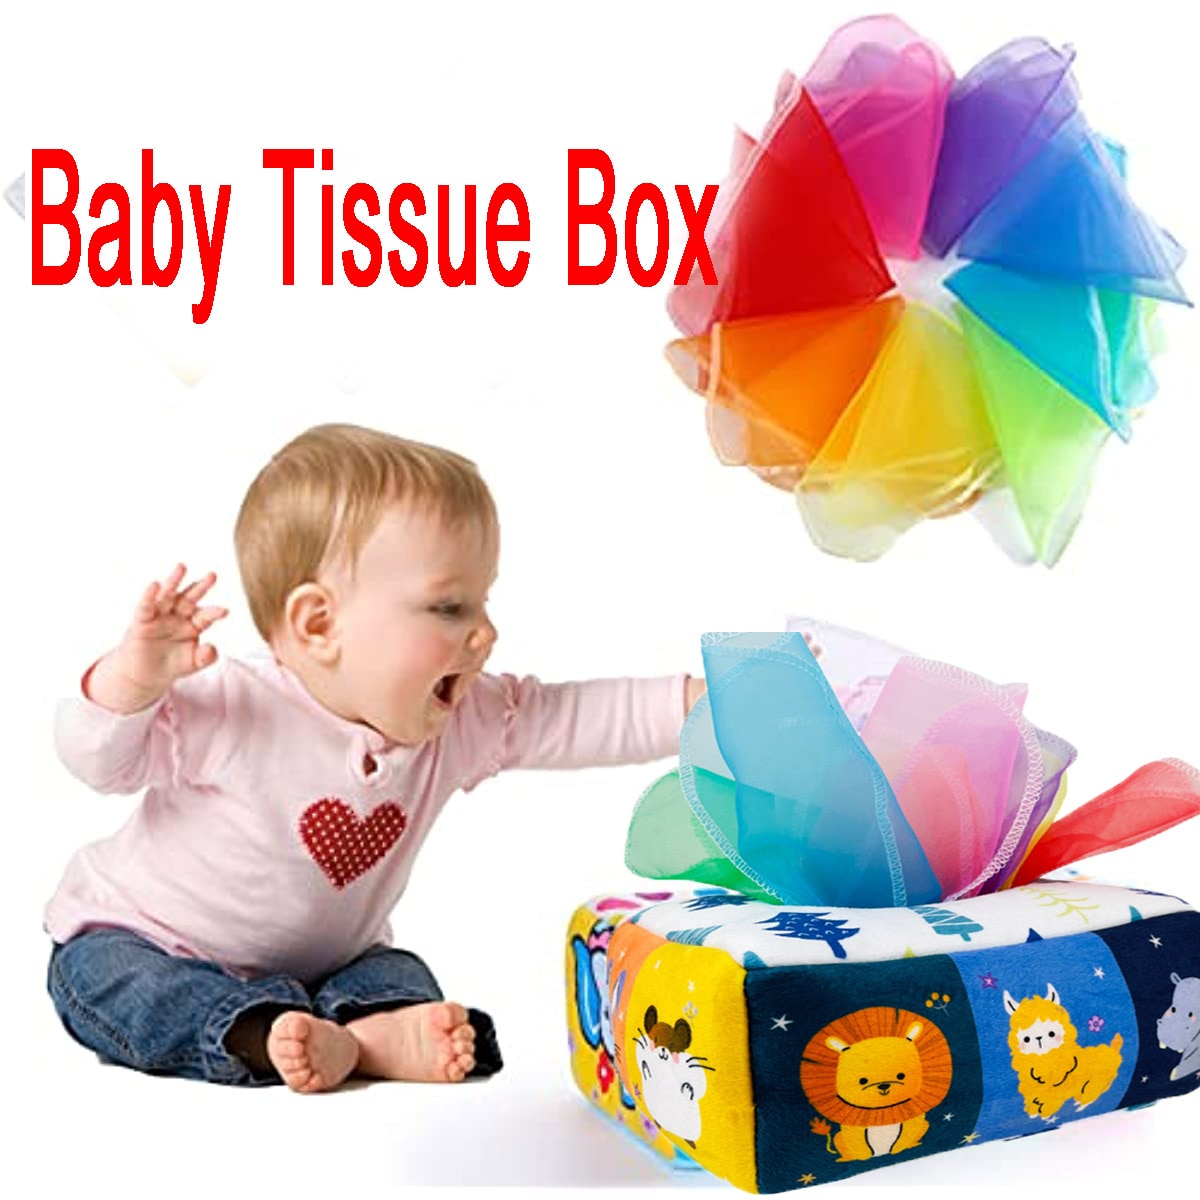 jeu sensoriel, boîte à jouets sensorielle développement boîte à mouchoirs  montessori, jouets en peluche bébés 6 12 mois bébé, jeu boîte à mouchoirs  en papier apprentissage précoce, tissu de développement sensoriel montessori